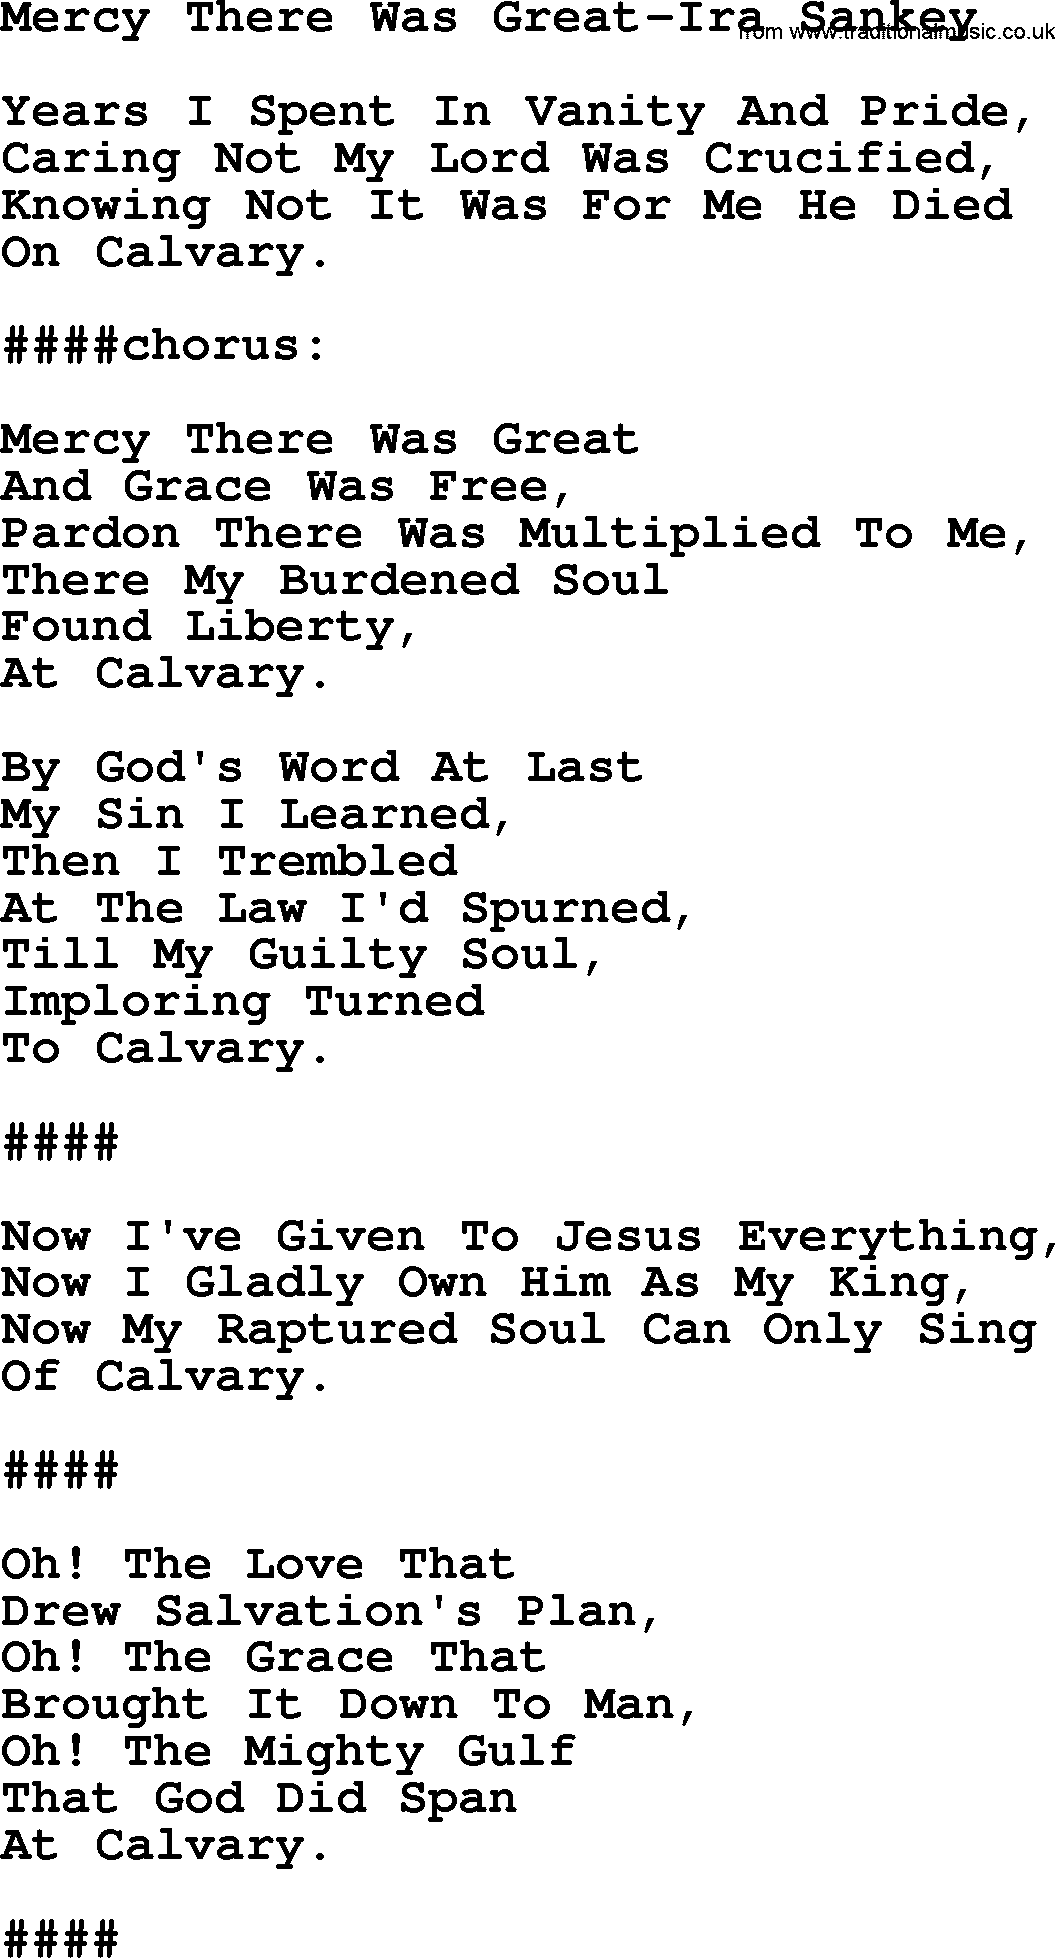 Ira Sankey hymn: Mercy There Was Great-Ira Sankey, lyrics